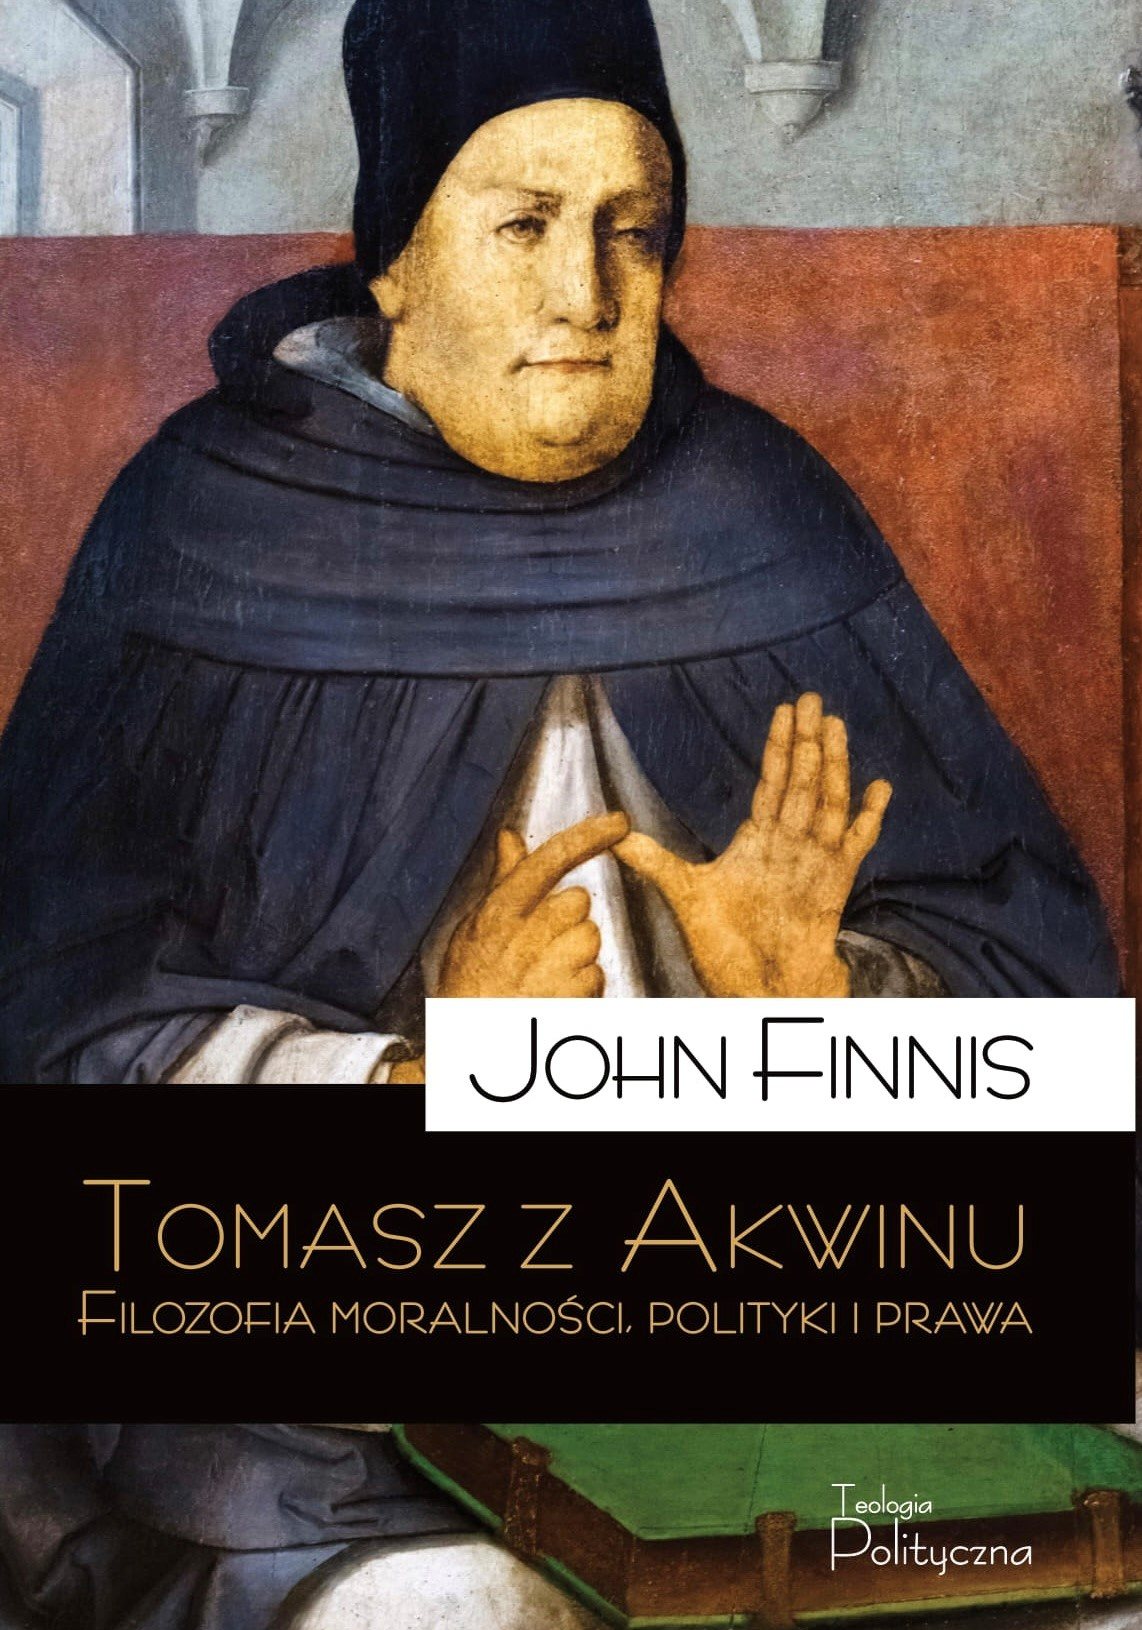 John Finnis, Tomasz z Akwinu. Filozofia moralności, polityki i prawa